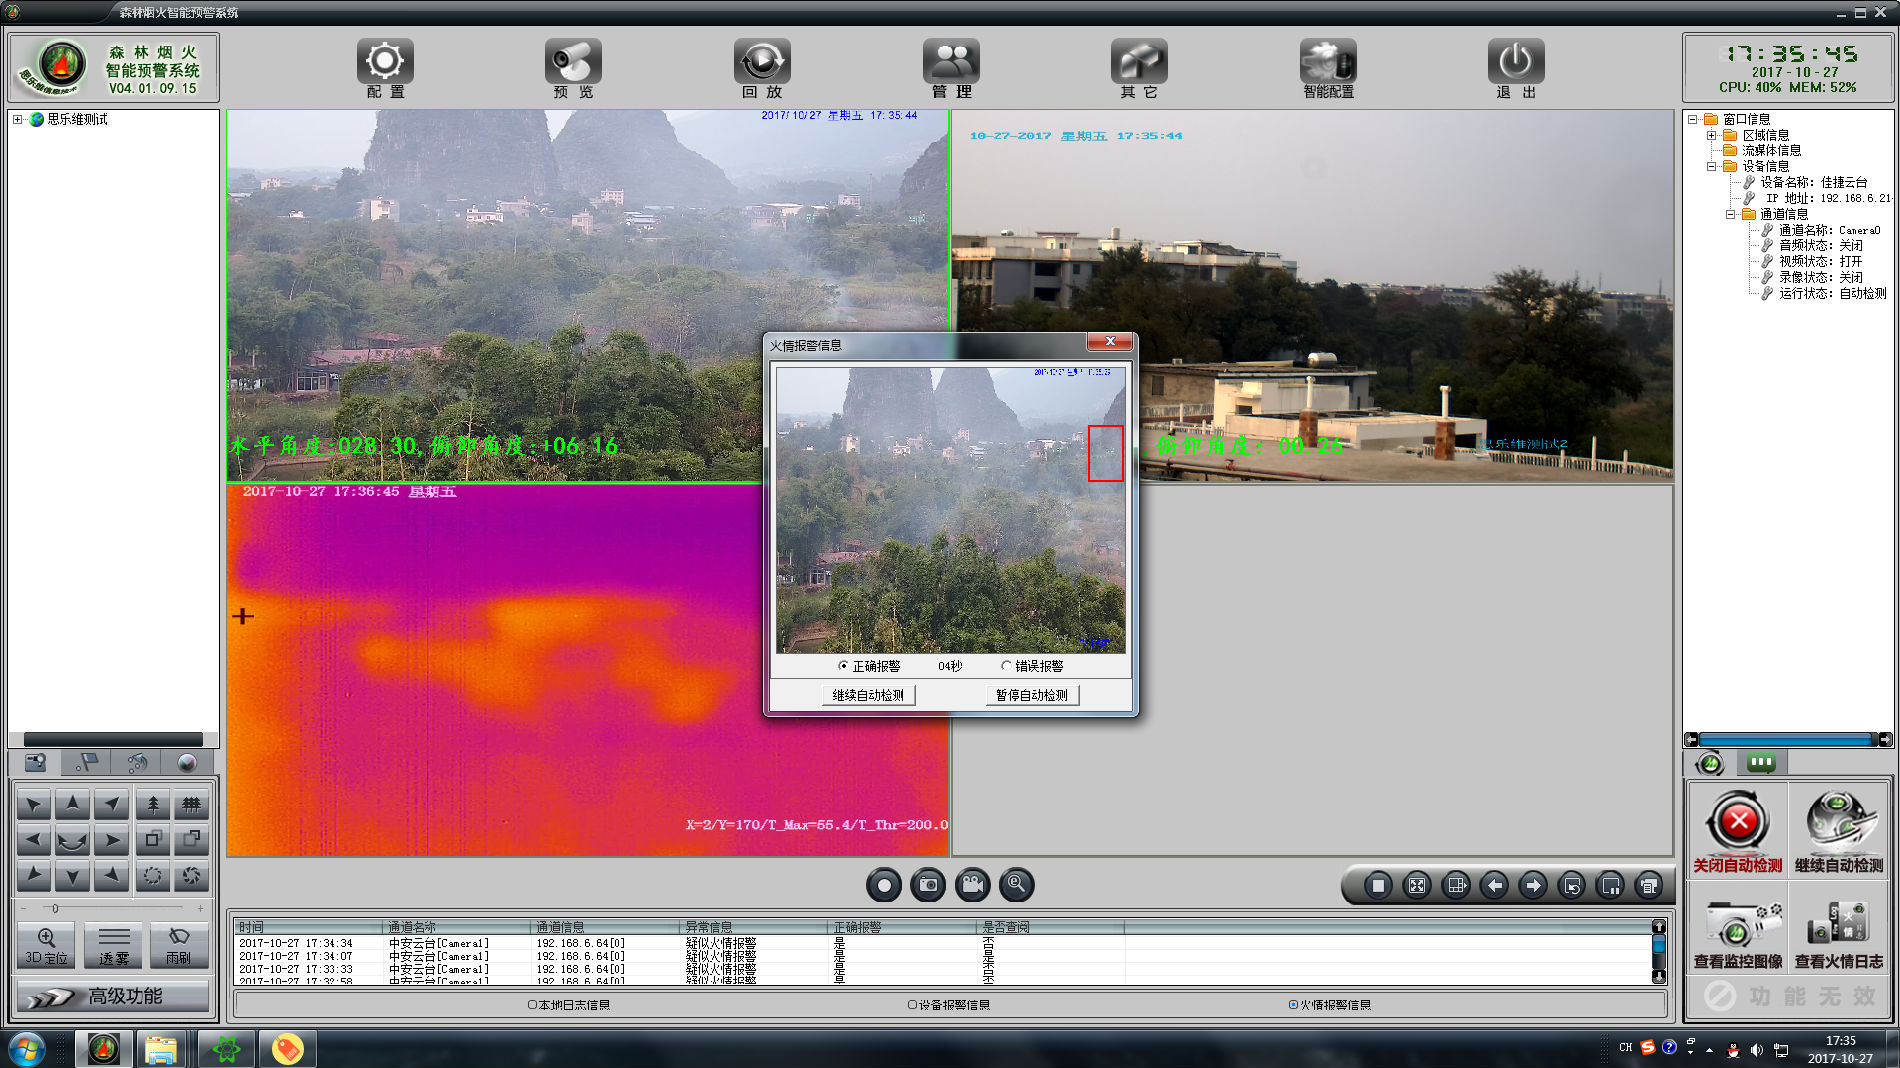 桂林思乐维森林防火视频监控系统 森林烟火智能识别软件